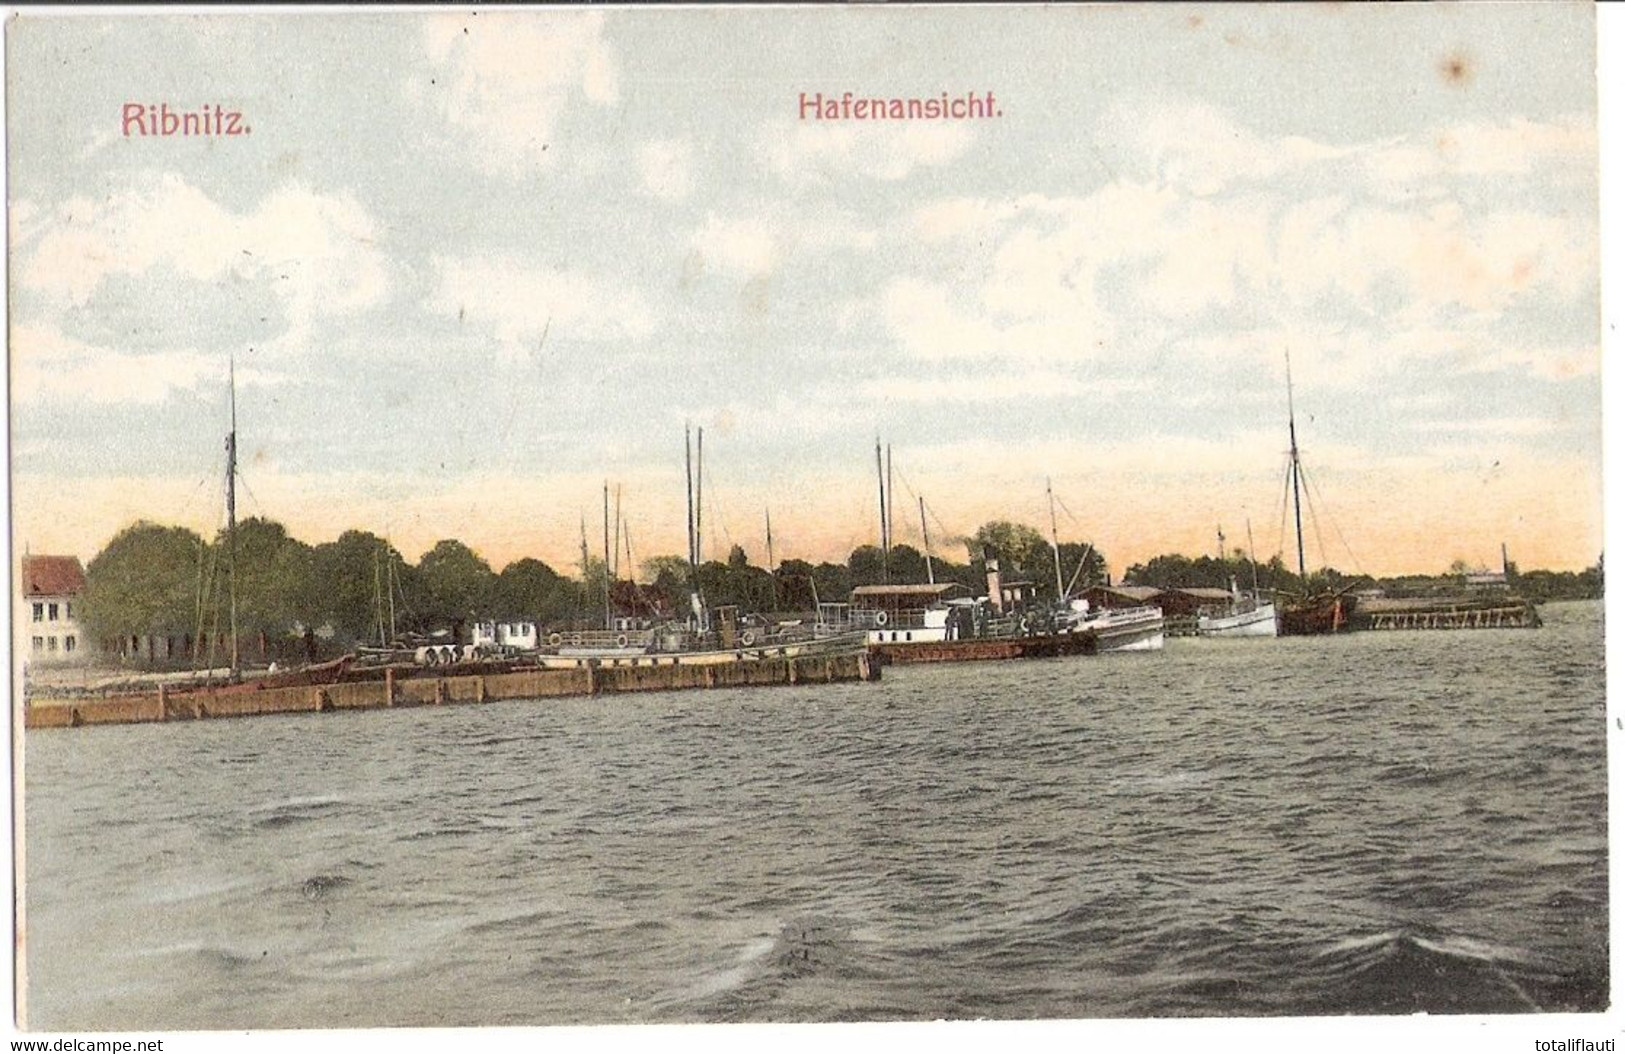 RIBNITZ Mecklenburg Hafenansicht Von Der Seeseite Color 27.7.1916 Gelaufen - Ribnitz-Damgarten